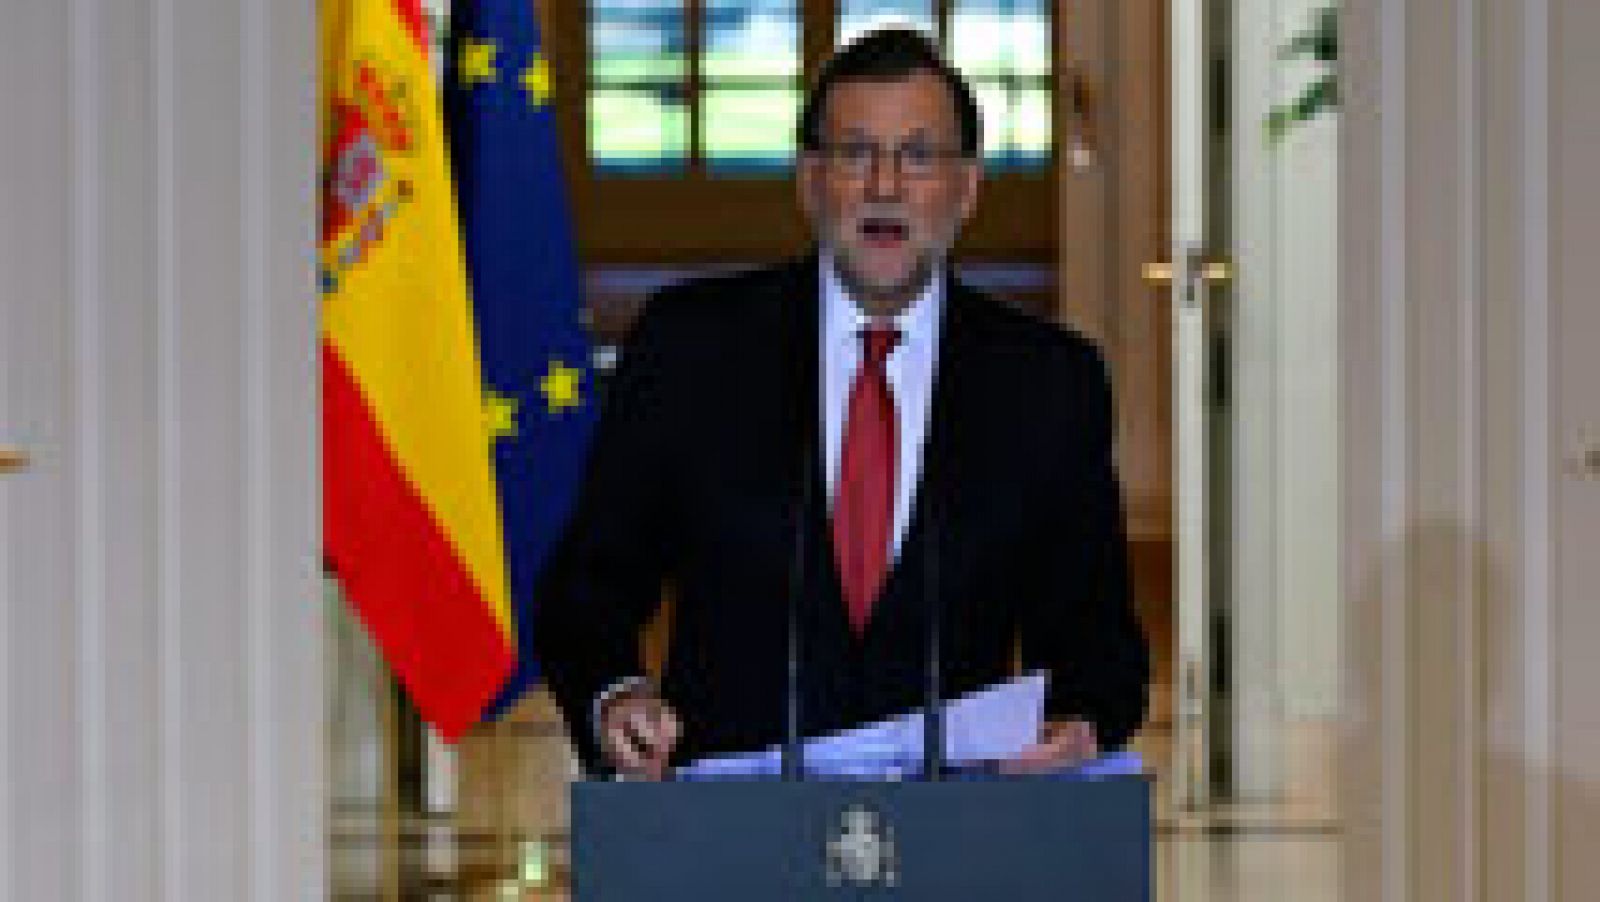 Telediario 1: Mariano Rajoy hace balance del 2016 al que se ha referido como "el año de la incertidumbre" | RTVE Play